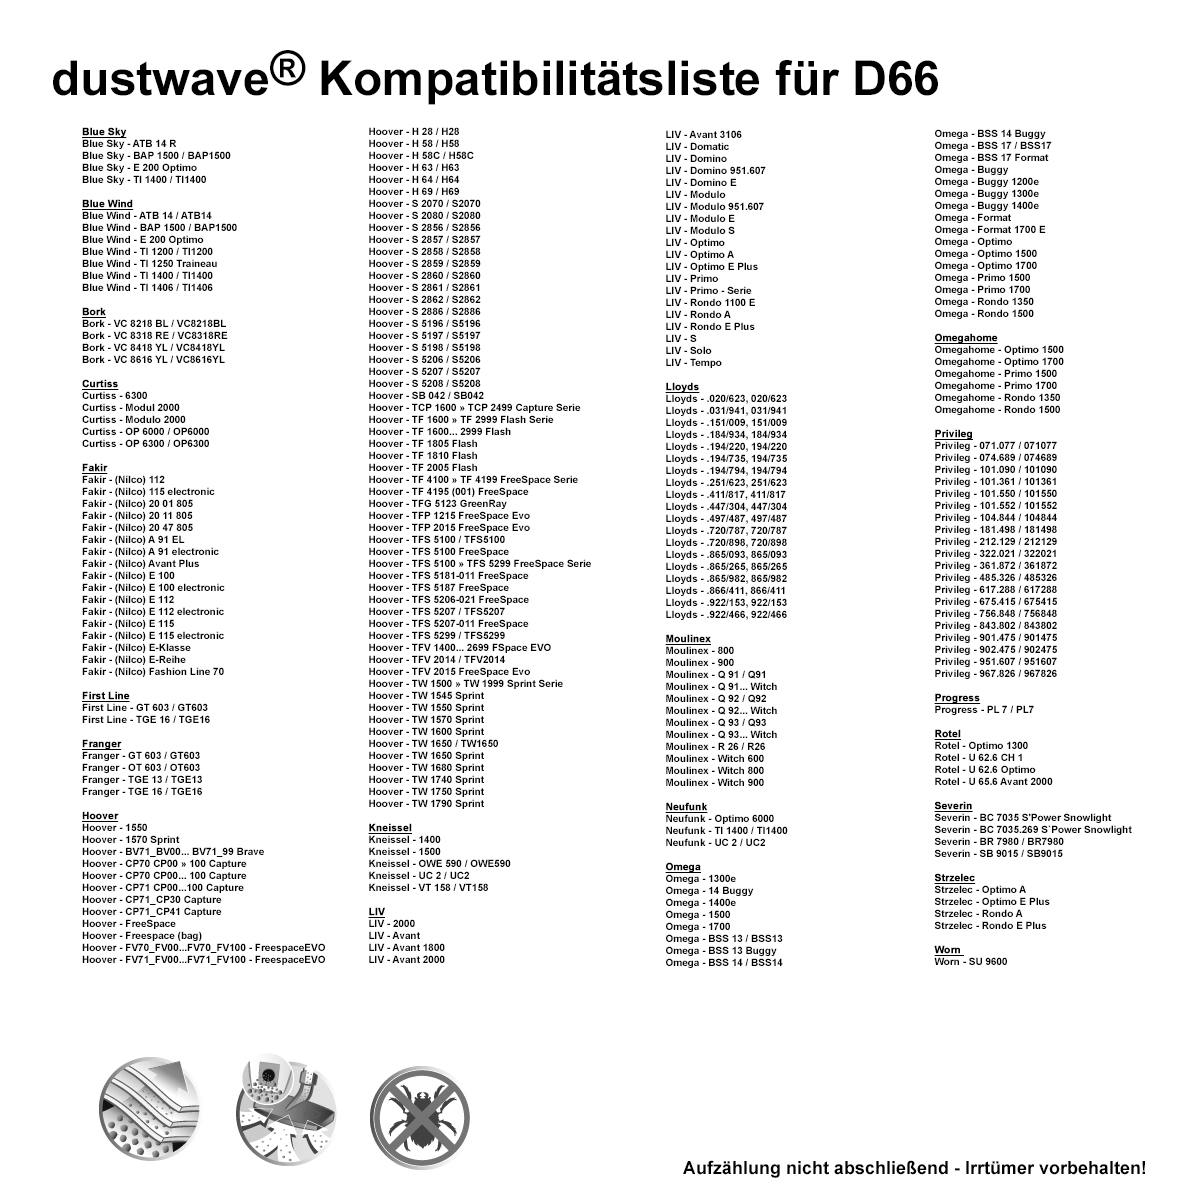 Dustwave® 10 Staubsaugerbeutel für Hoover TFS 5205... FreeSpace - hocheffizient, mehrlagiges Mikrovlies mit Hygieneverschluss - Made in Germany